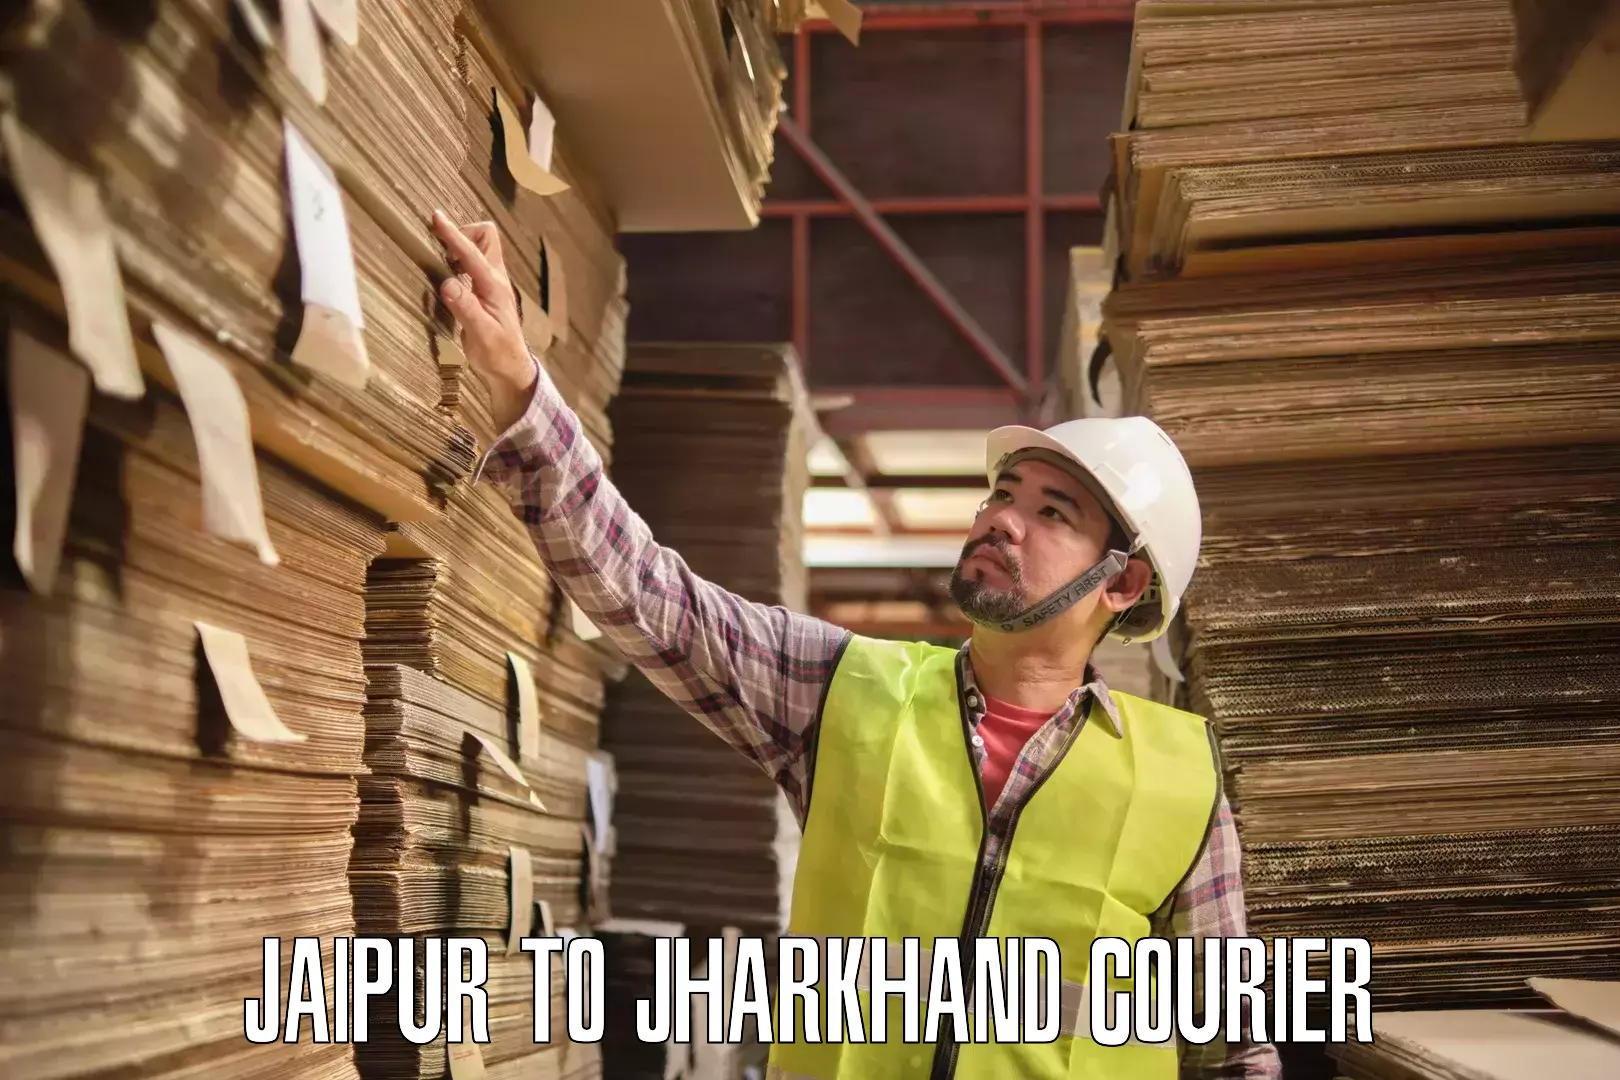 Premium courier services Jaipur to Garhwa